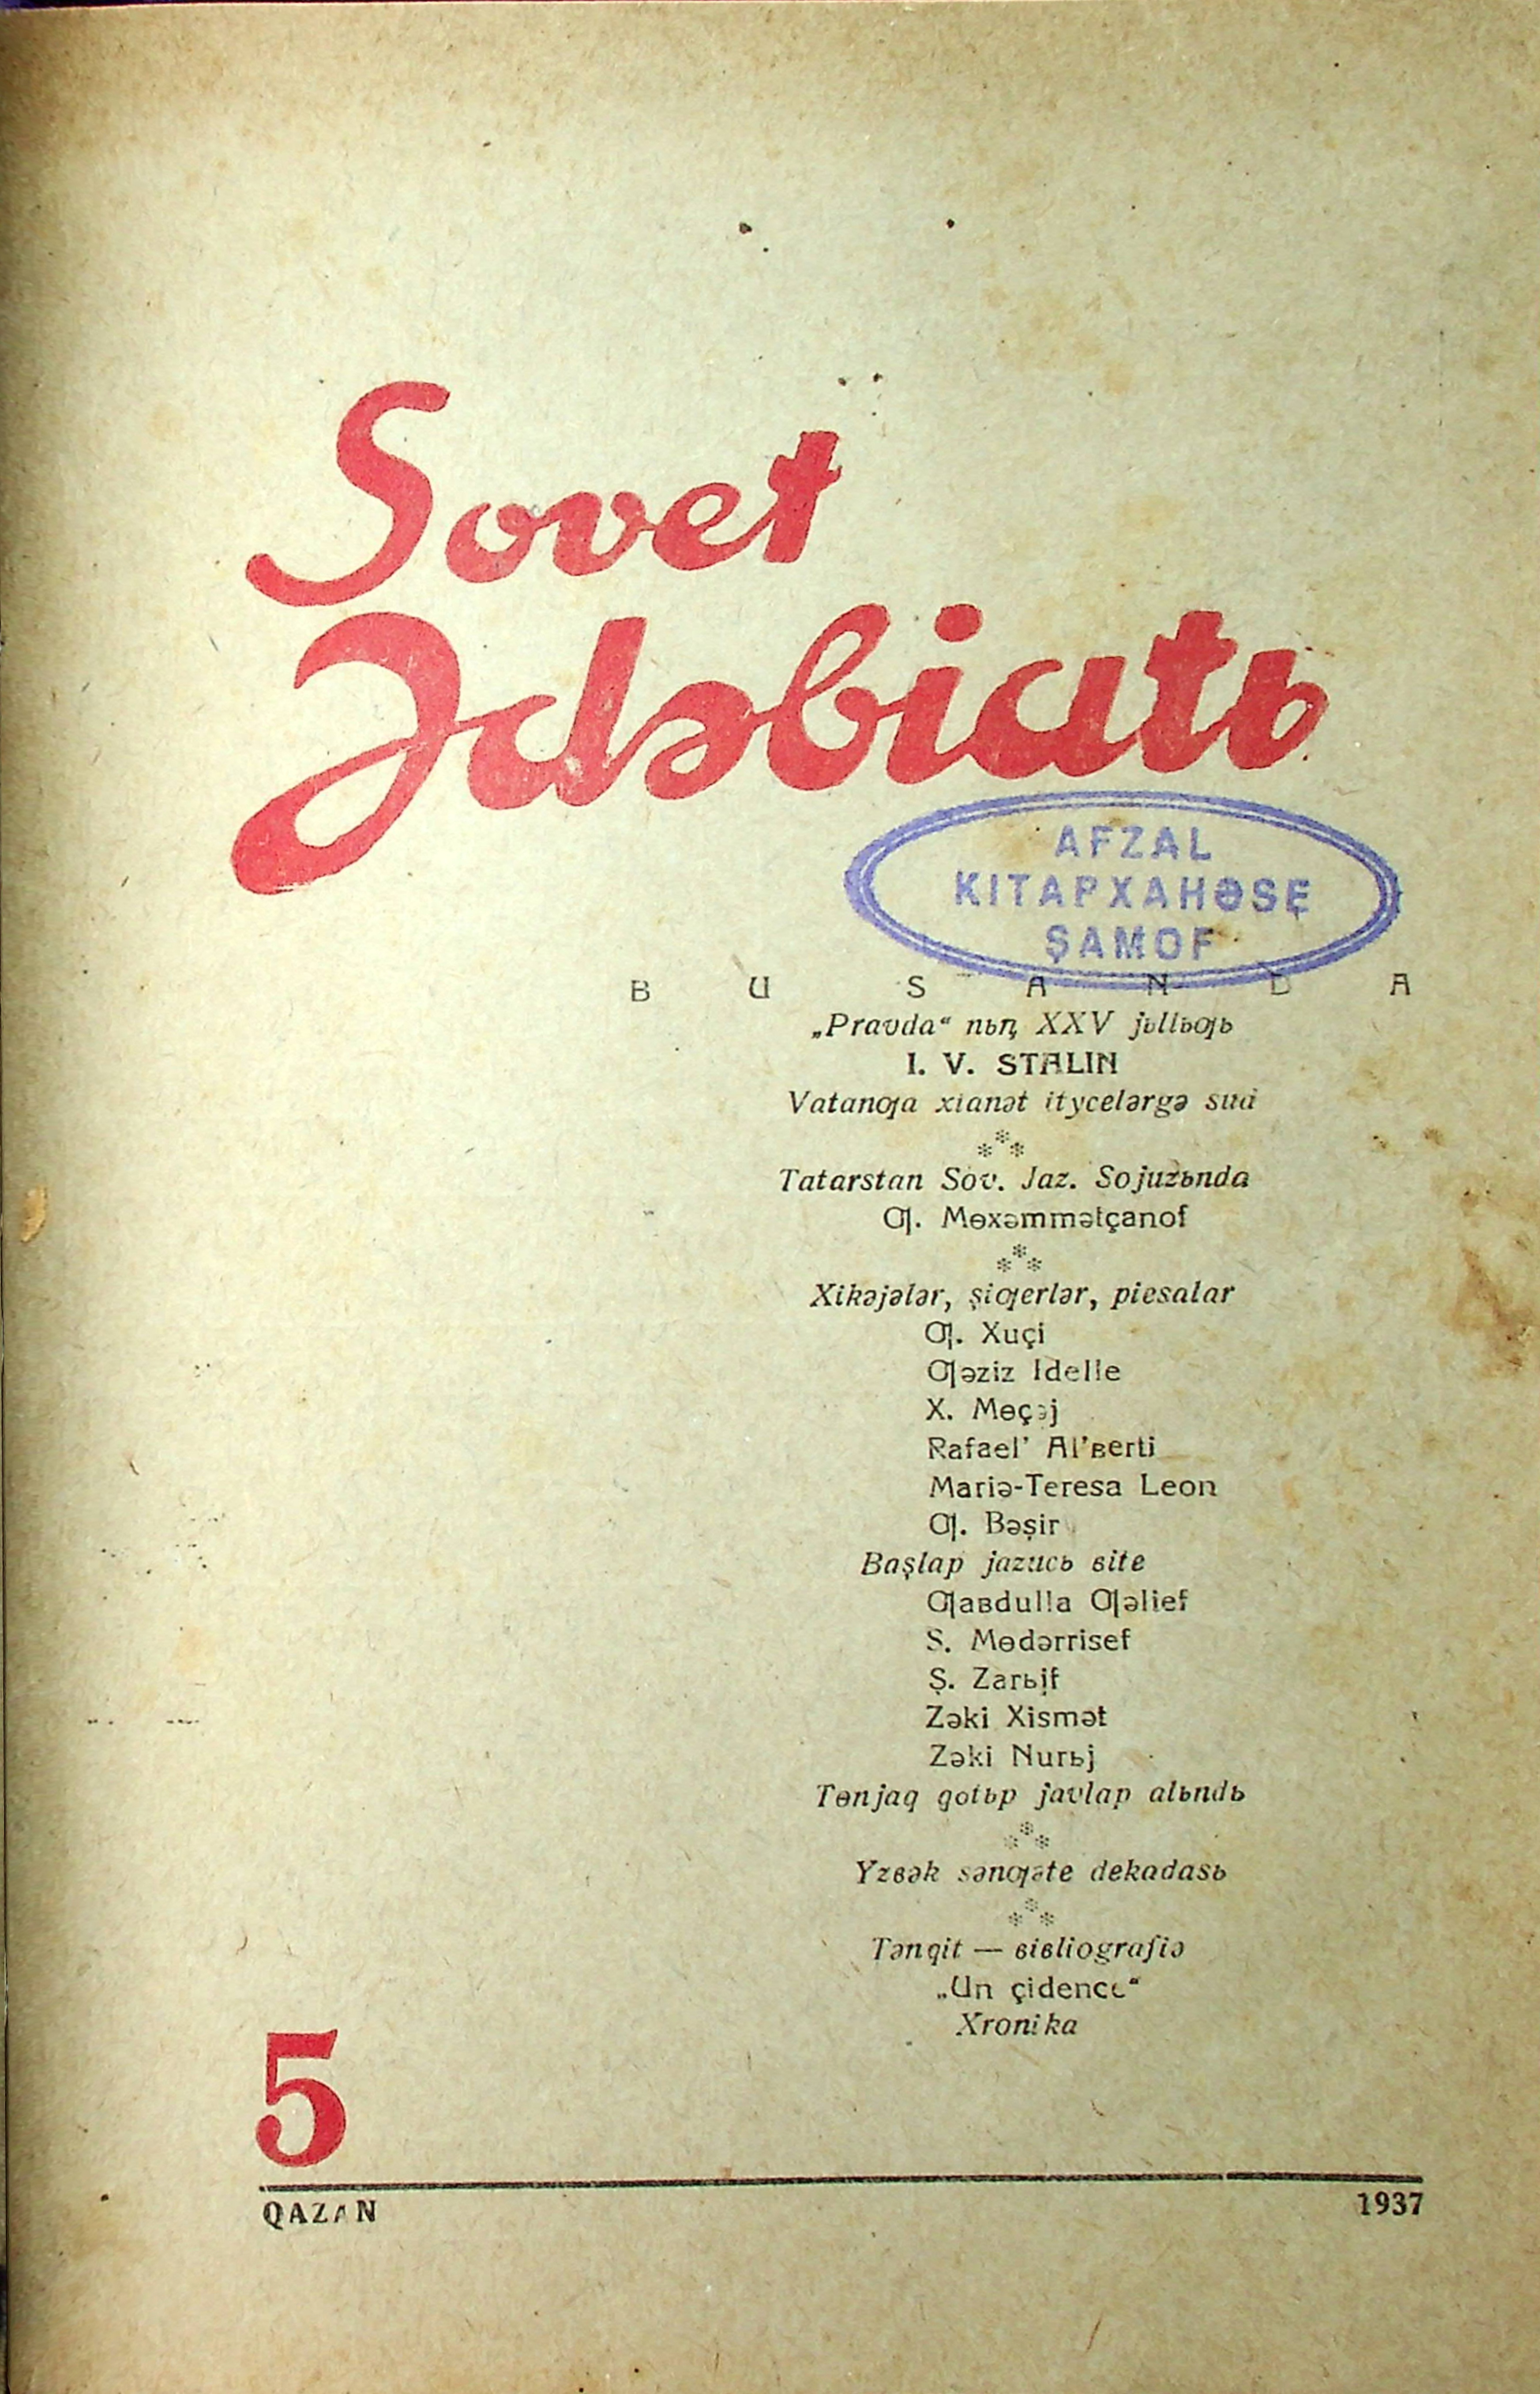 Фото журнала 1937 года. Выпуск номер 5